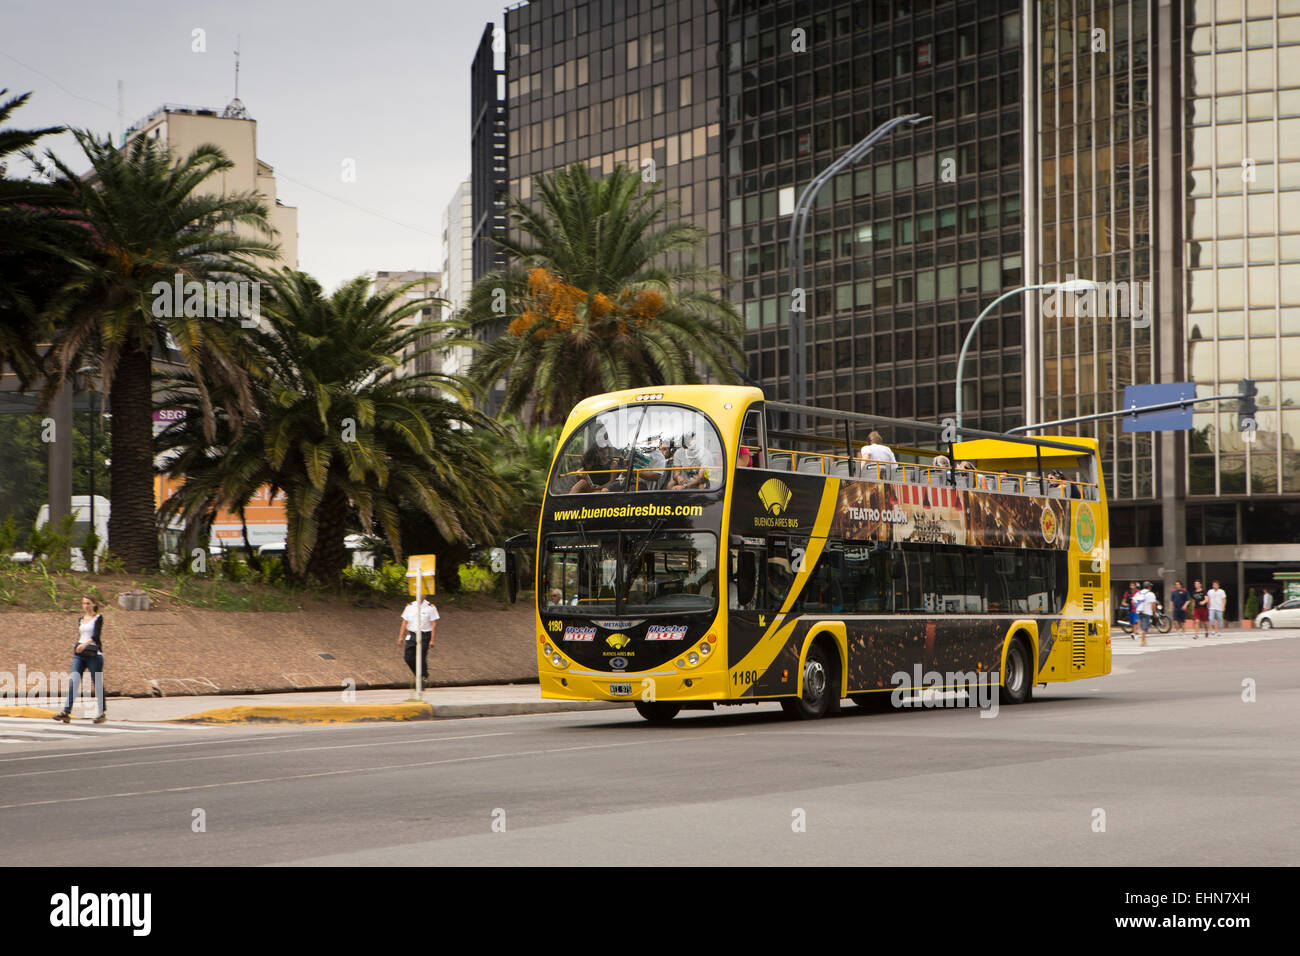 Argentina, Buenos Aires, Retiro, San Martin, yellow open top tourist bus Stock Photo